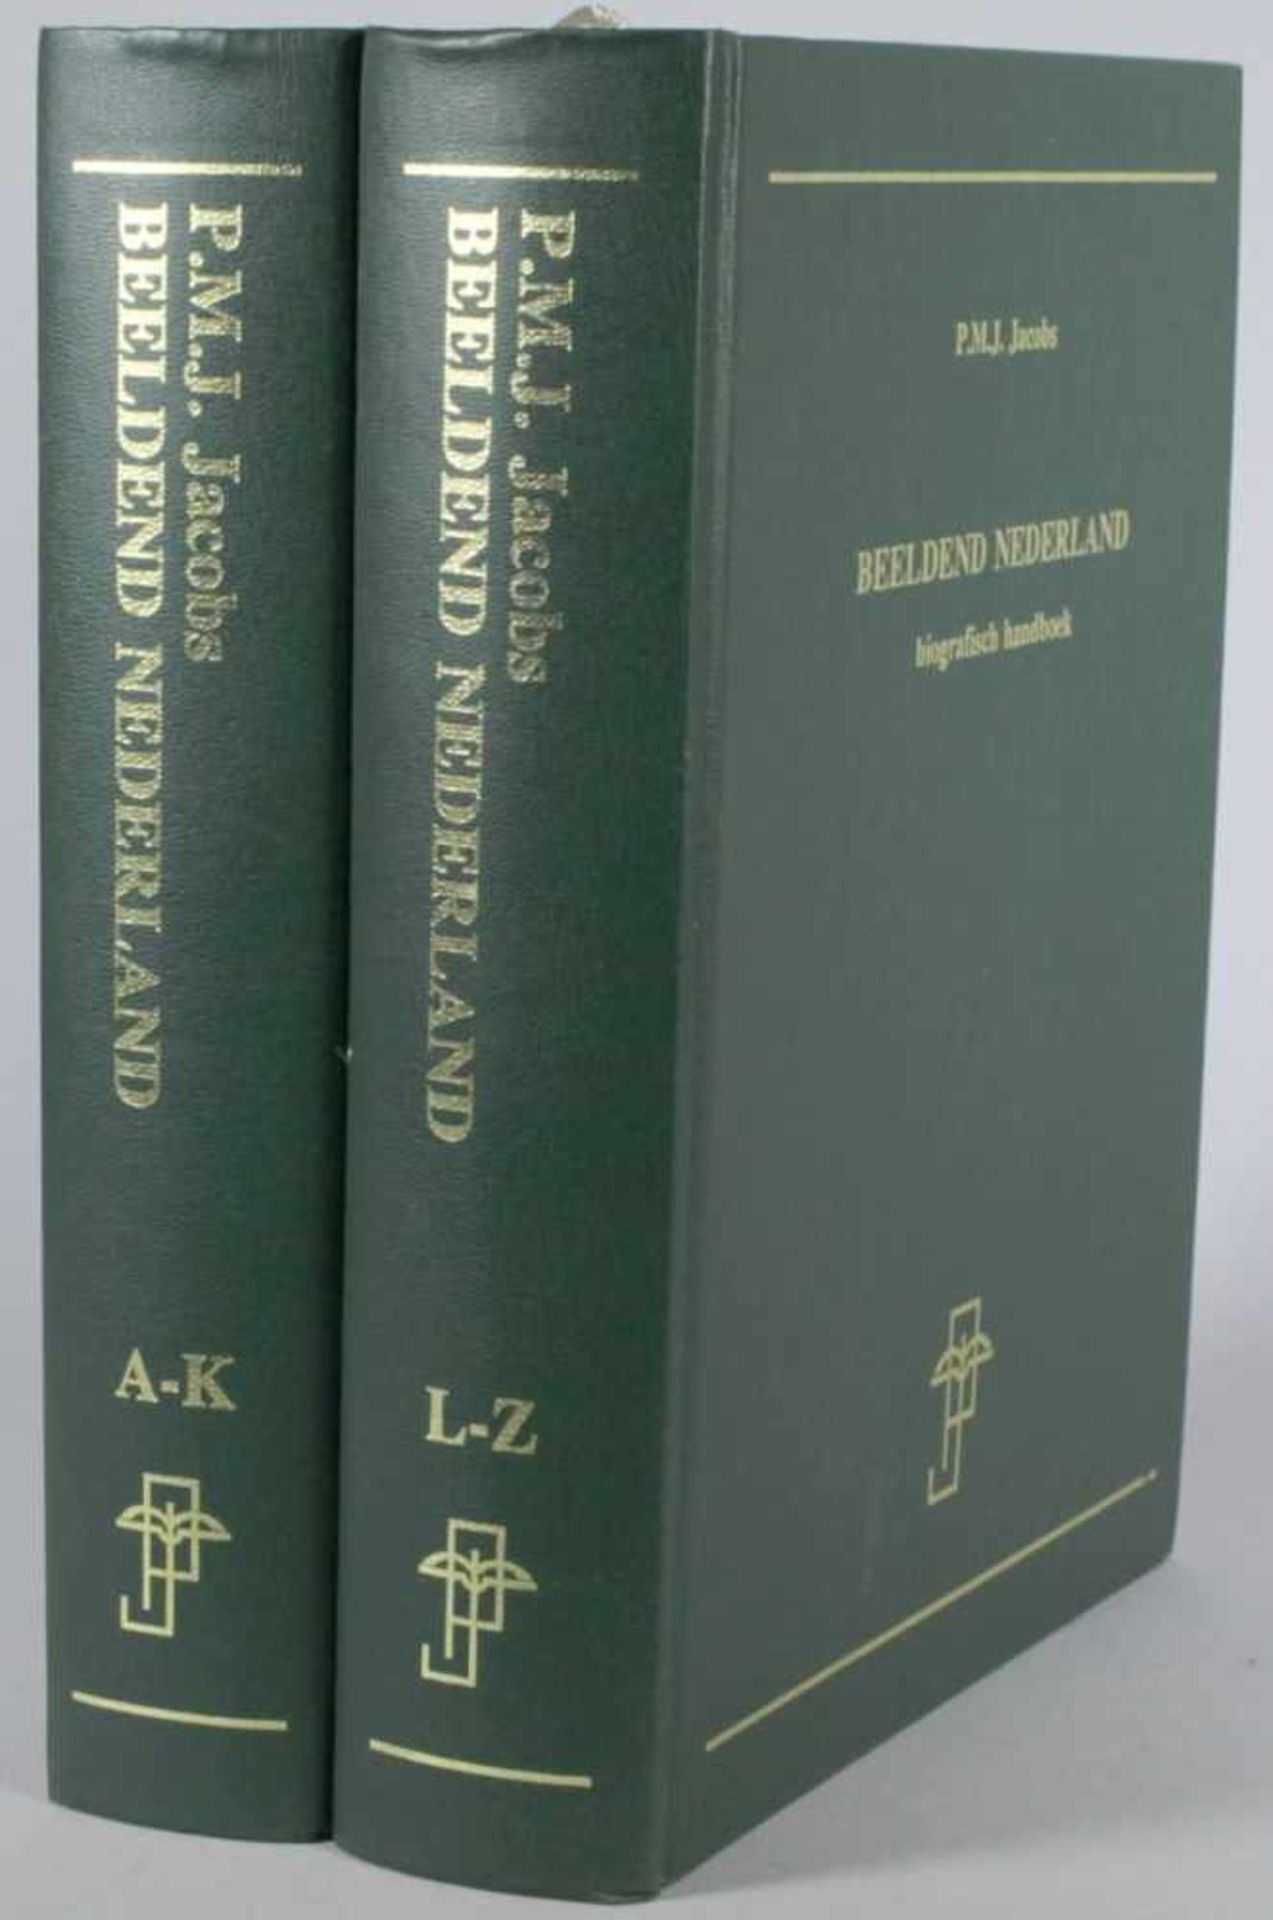 Zwei Bücher, P.M.J. Jacobs, Beeldend Nederland, Biografisches Handbuch, Tilburg, 1993,gebrauchter